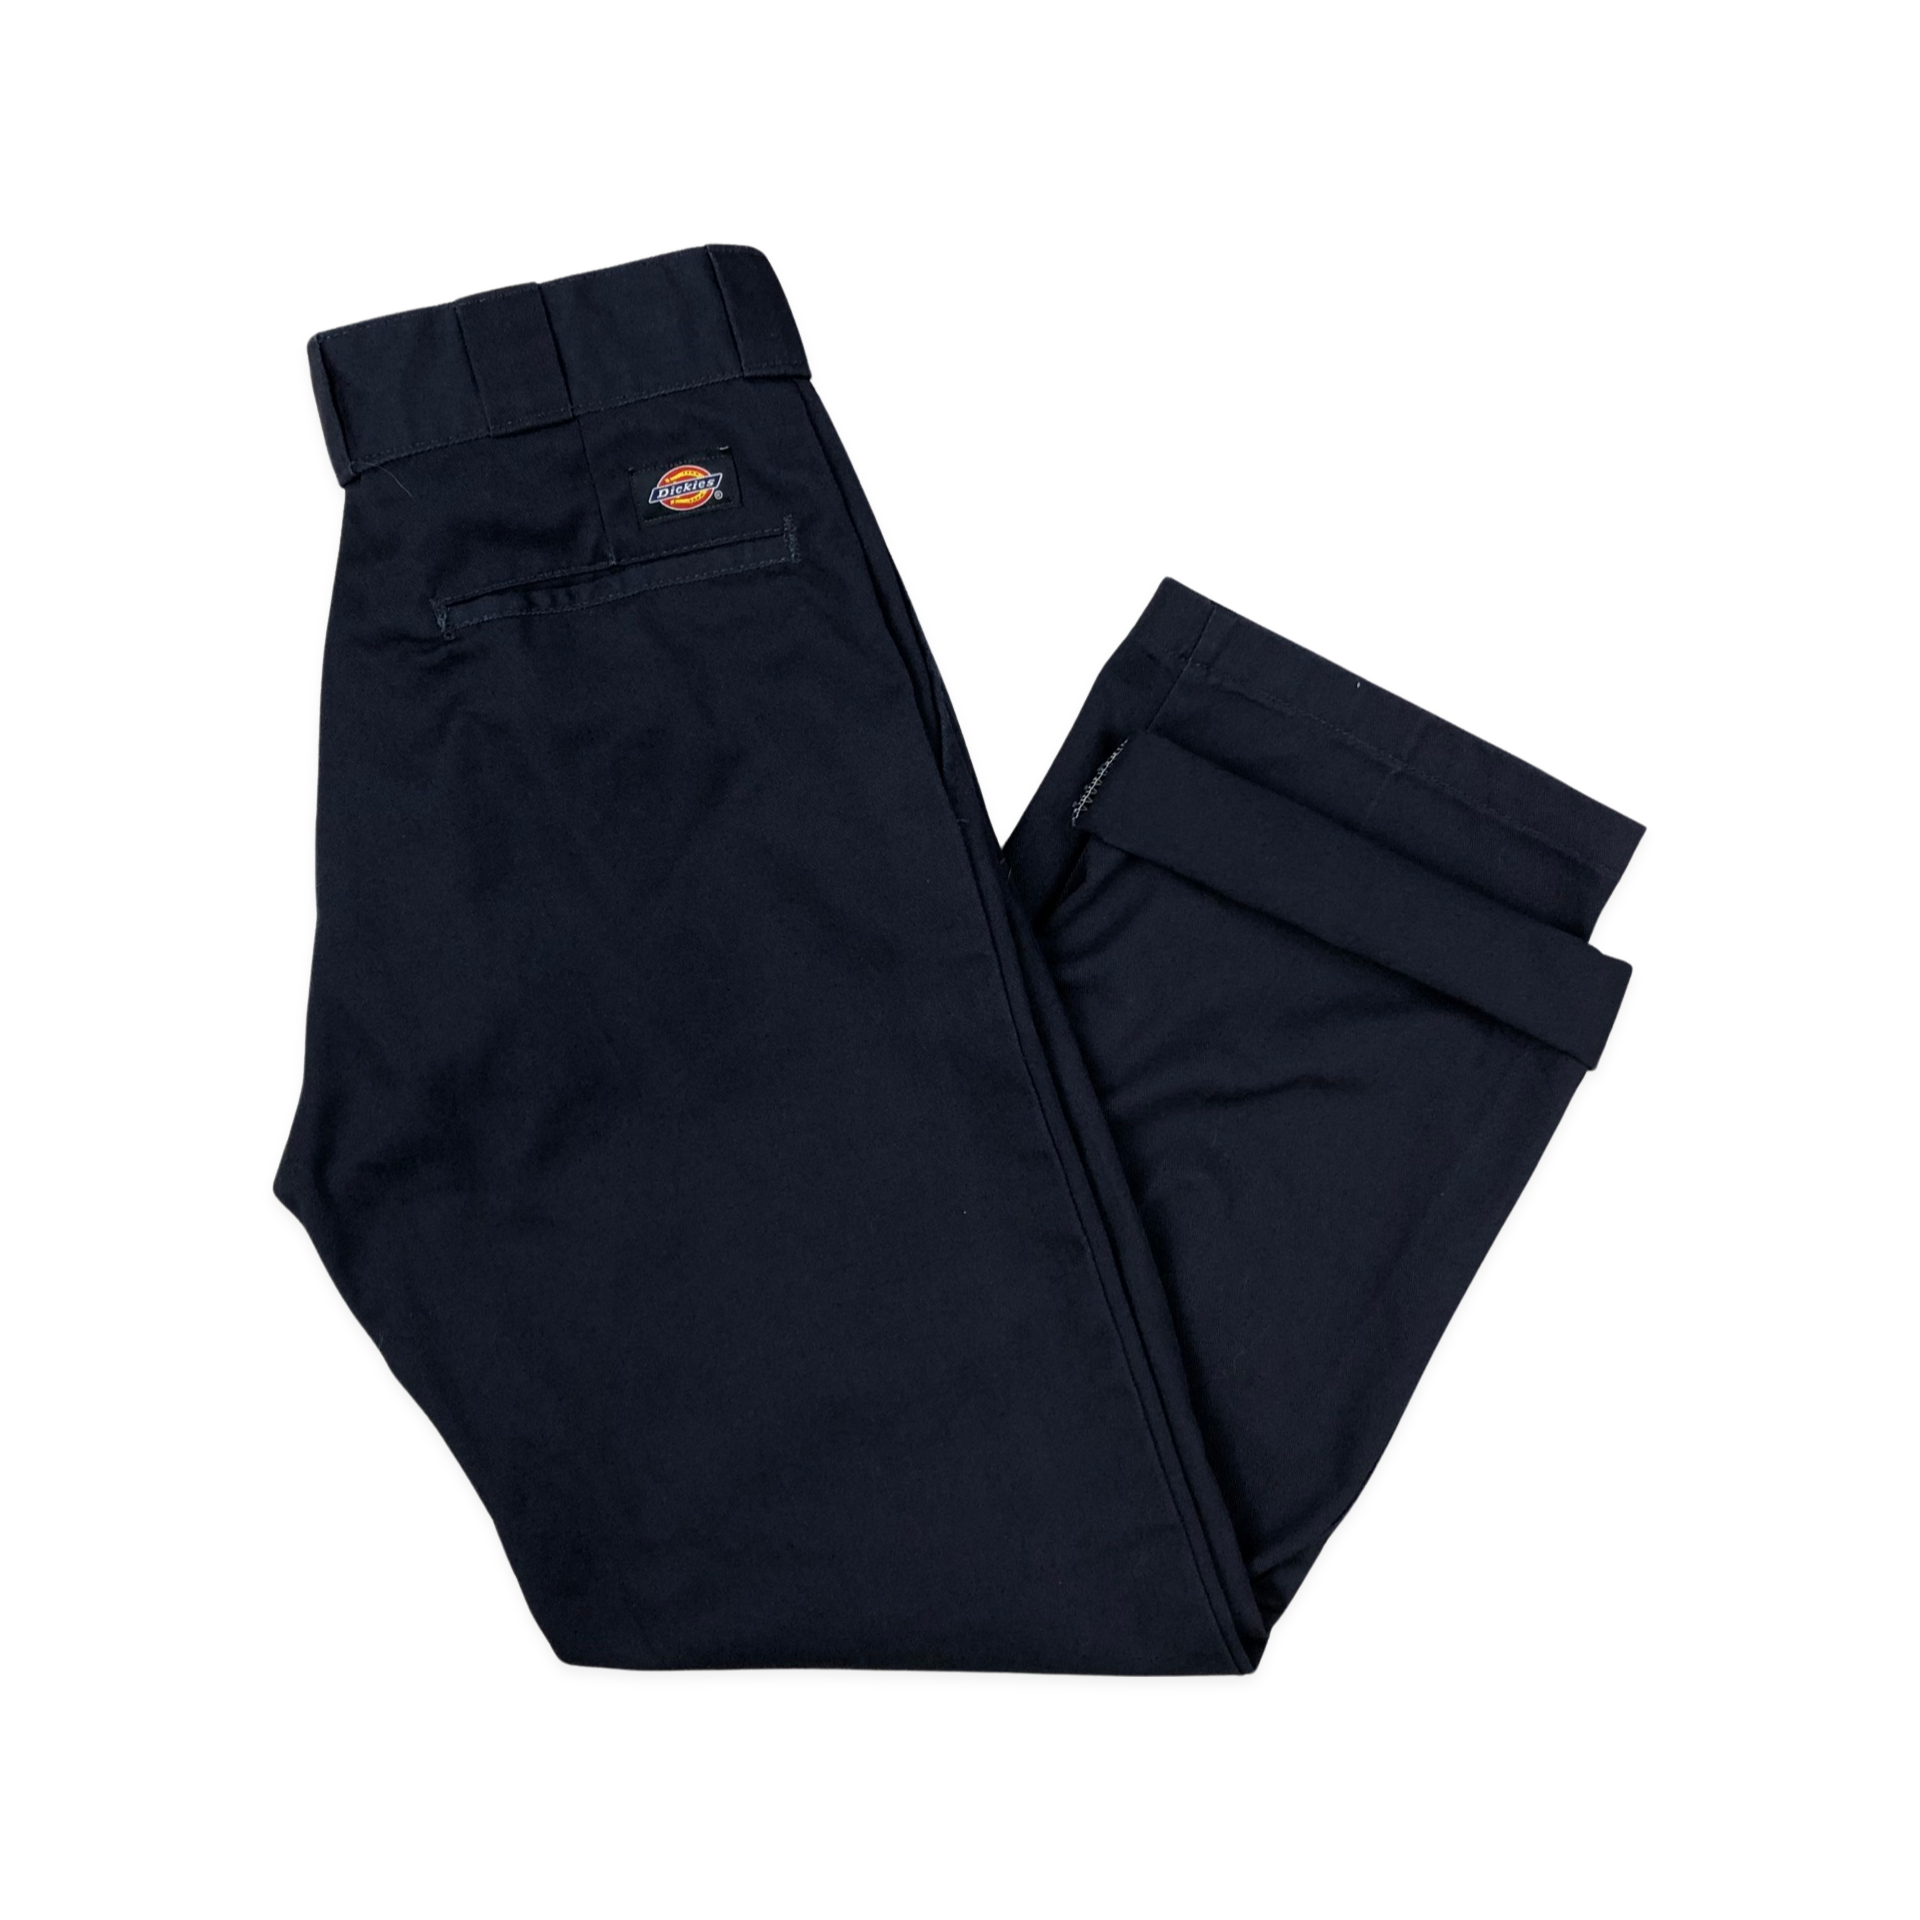 Fit 2 slim fit jeans, Grey Dickies 874 Work Pants